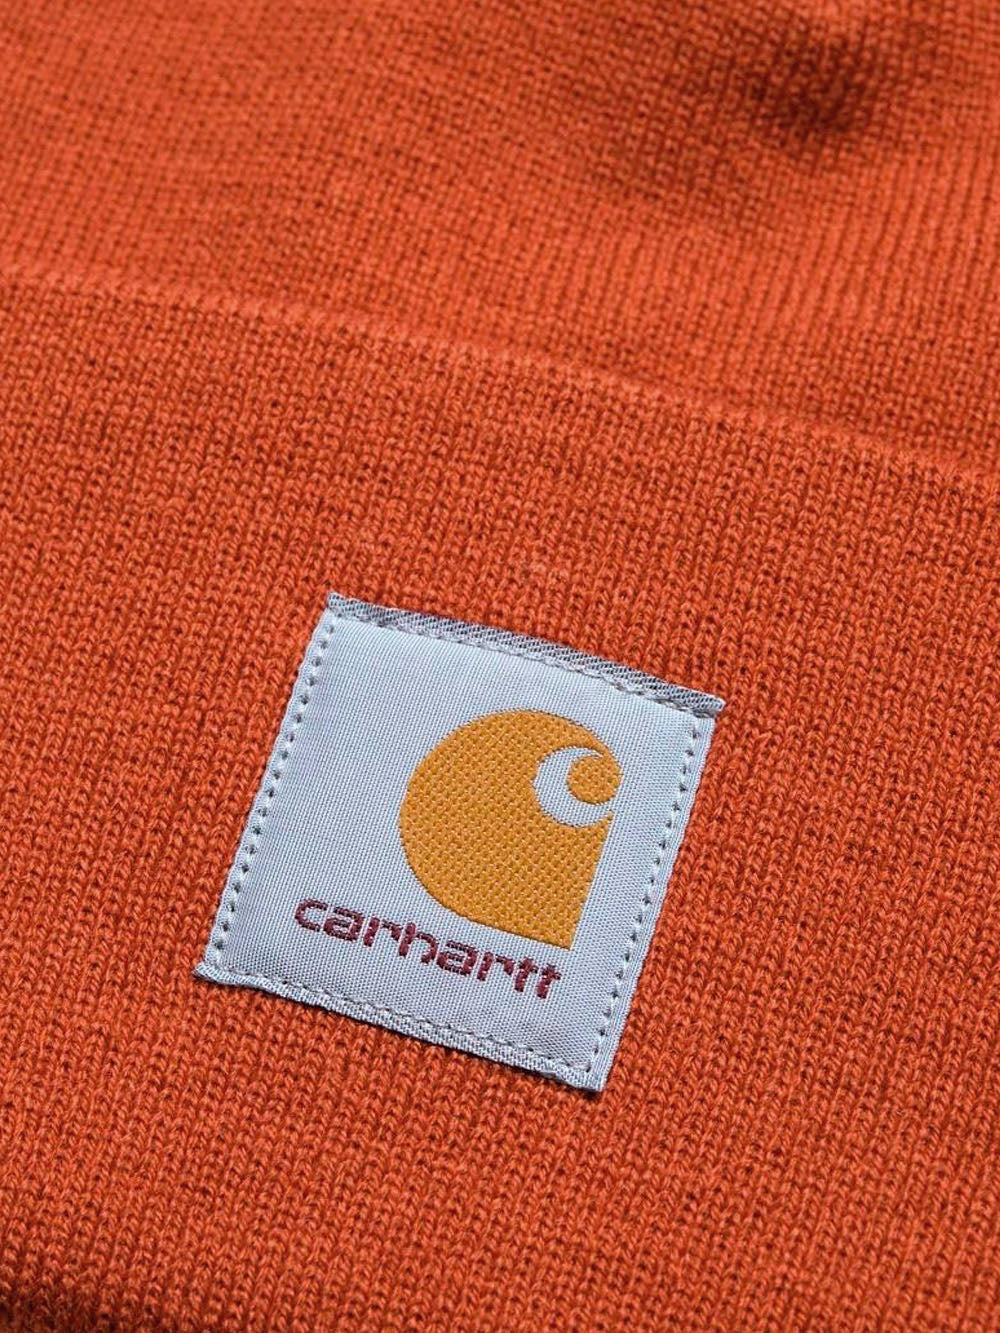 CARHARTT WIP Cappello Acrylic Watch arancione arancione Urbanstaroma